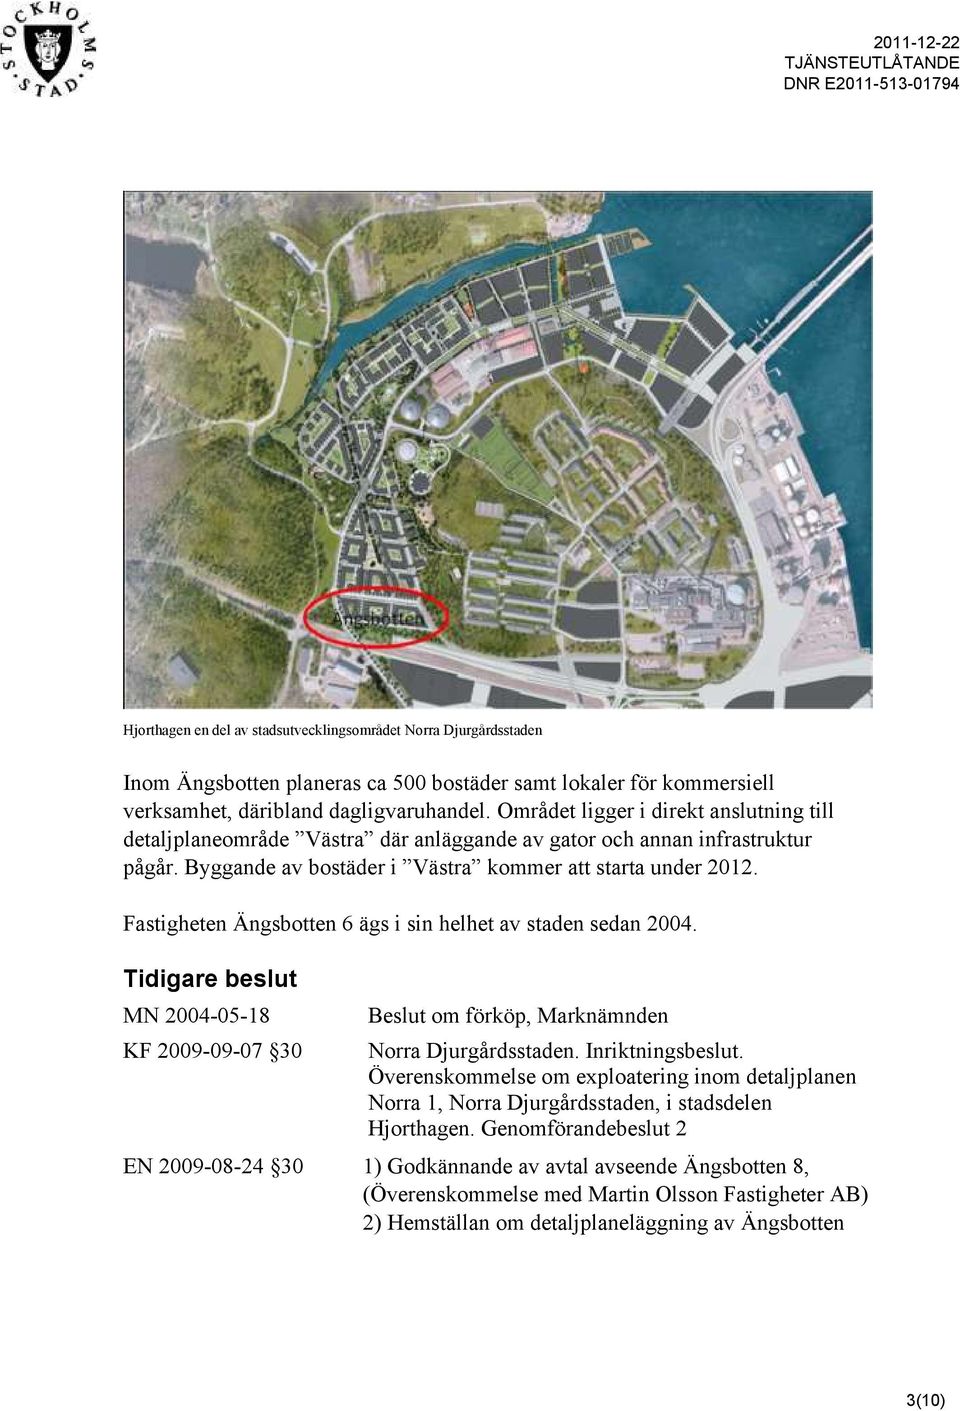 Fastigheten Ängsbotten 6 ägs i sin helhet av staden sedan 2004. Tidigare beslut MN 2004-05-18 KF 2009-09-07 30 Beslut om förköp, Marknämnden Norra Djurgårdsstaden. Inriktningsbeslut.